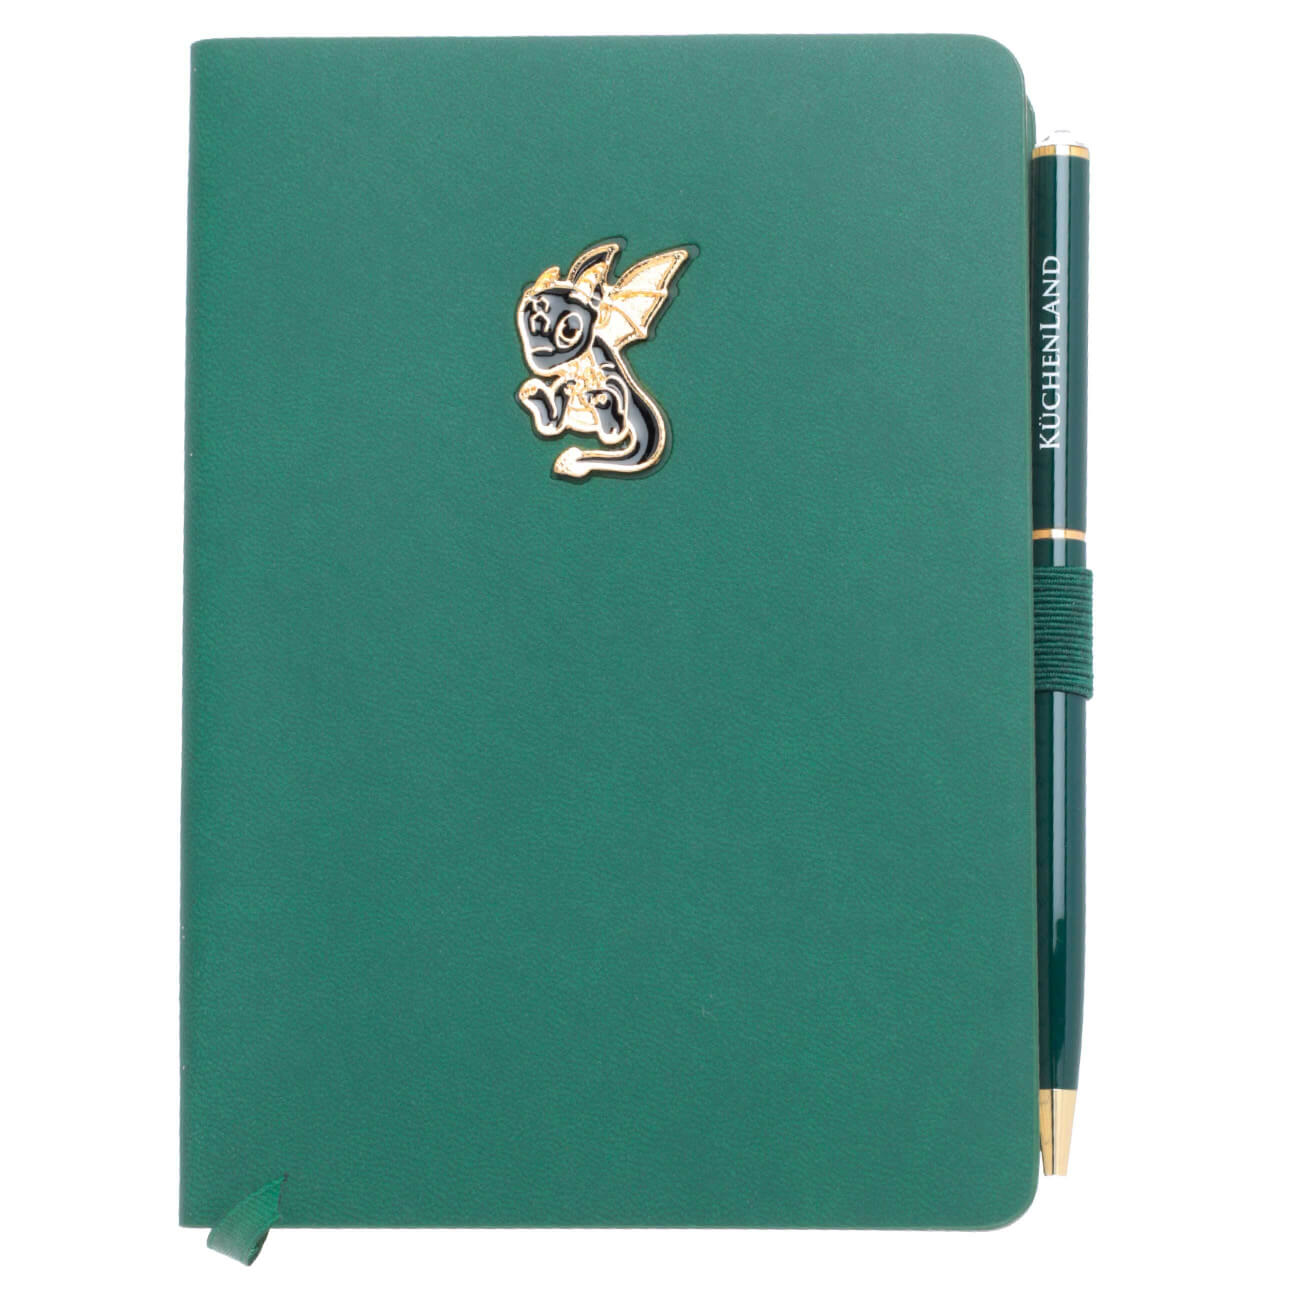 Блокнот для записей, 15х11 см, с ручкой, полиуретан, зеленый, Дракон с крыльями, Dragon spyro блокнот для записей falafel books а5 сobalt